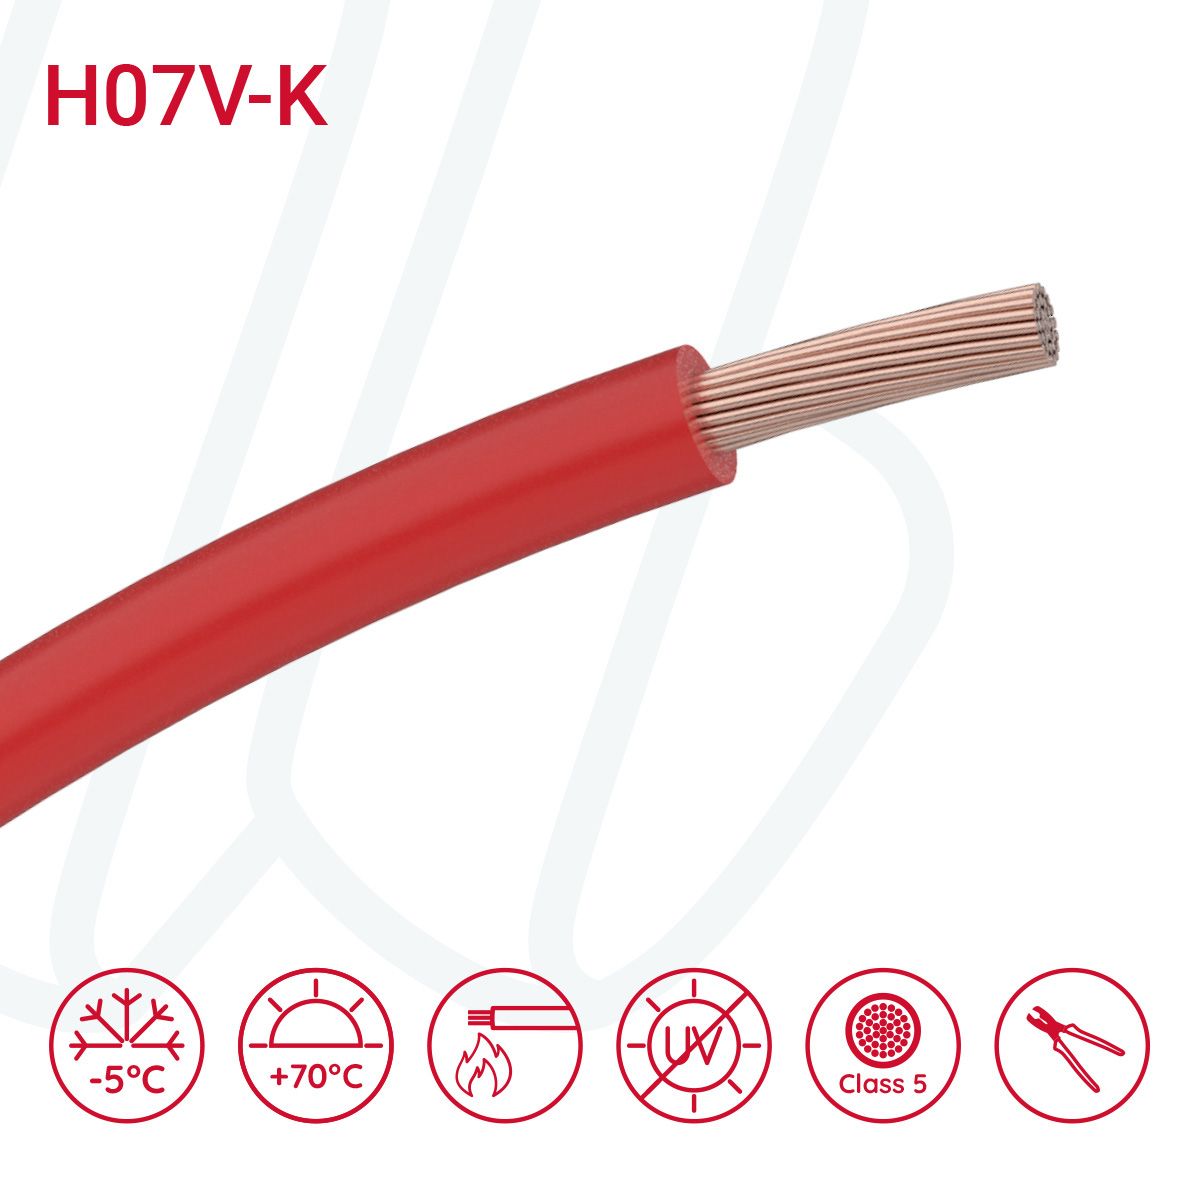 Провід монтажний гнучкий H07V-K 50 мм² червоний, 01, 50